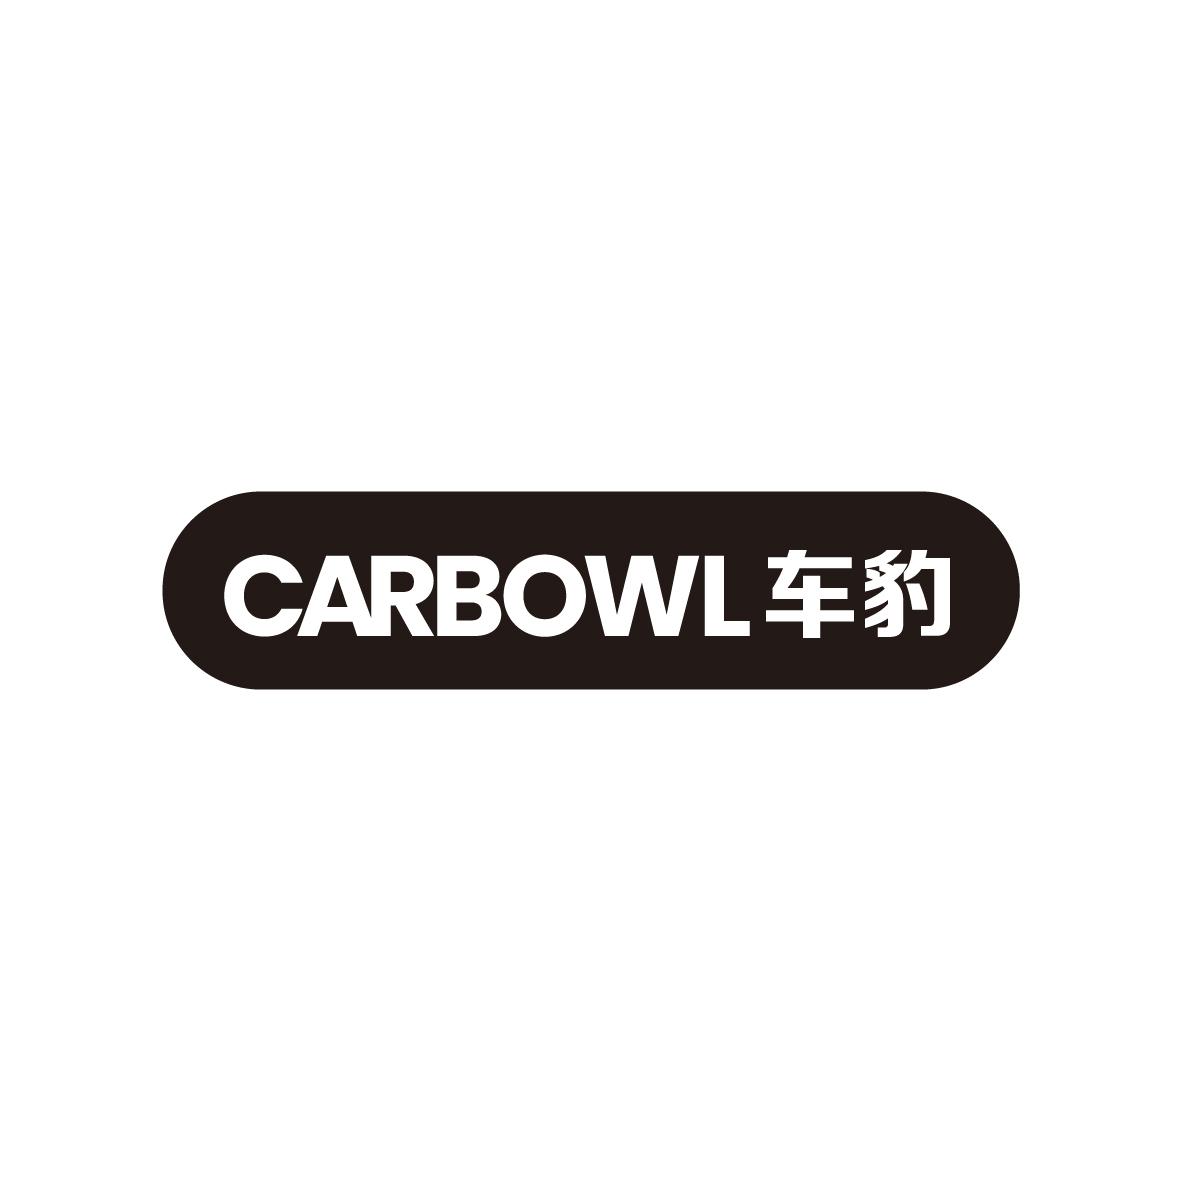  CARBOWL